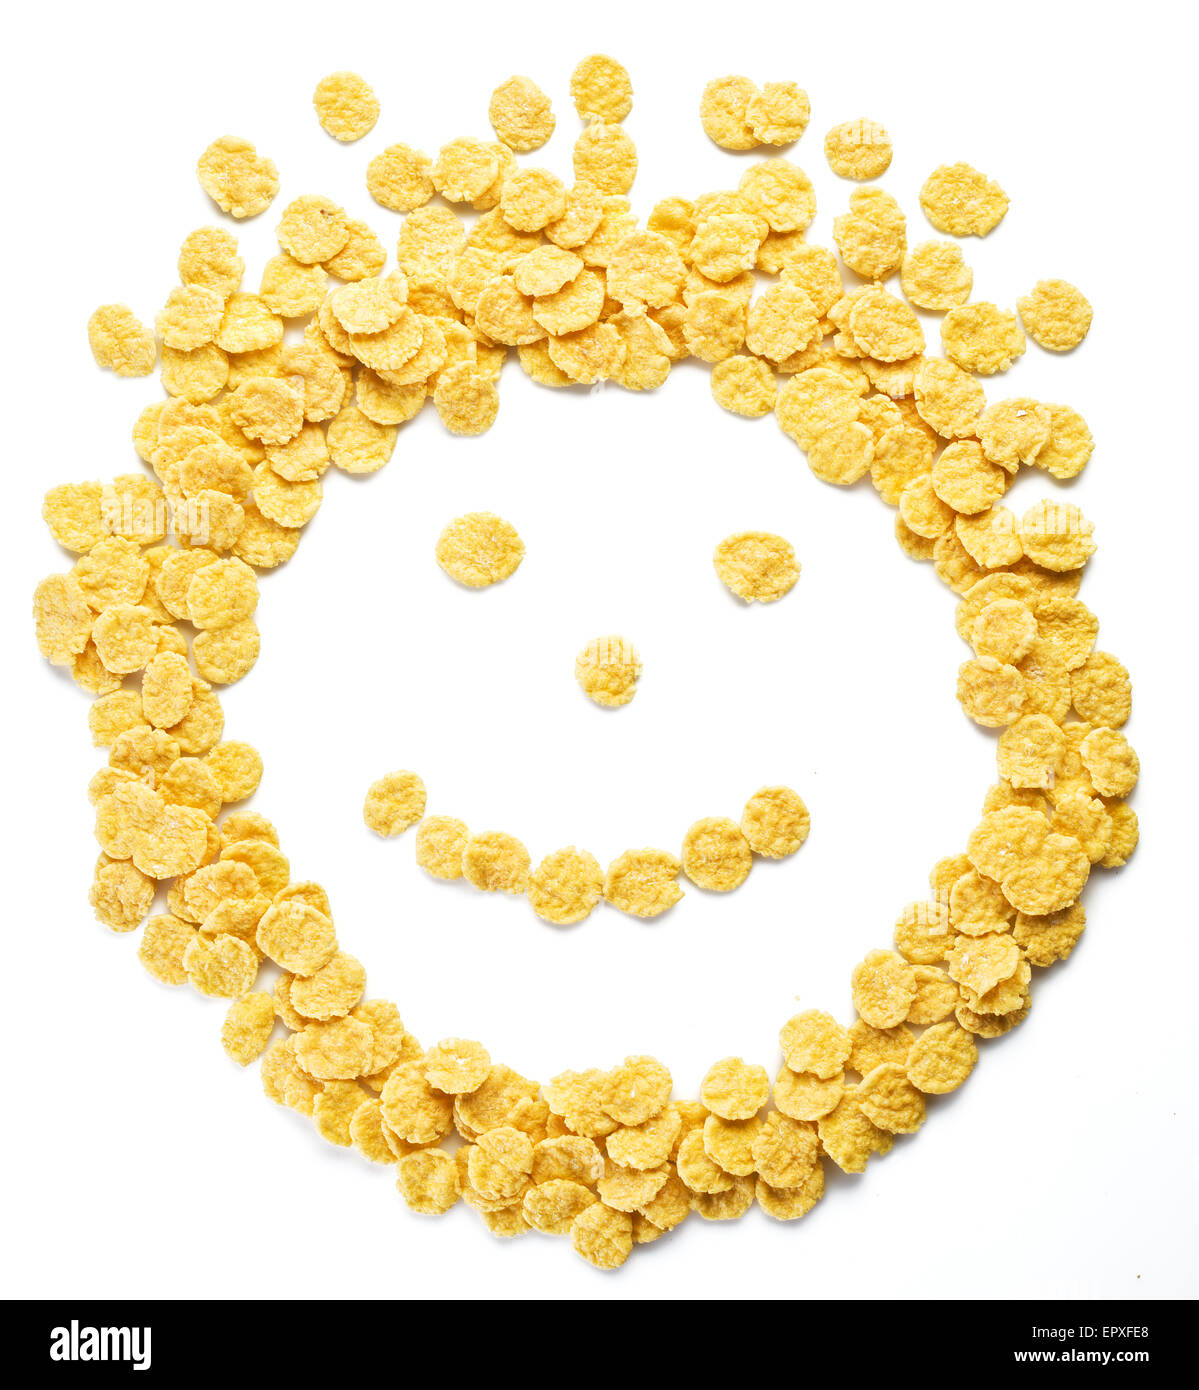 Cornflakes als Smiley-Gesicht auf einem weißen Hintergrund angeordnet. Stockfoto